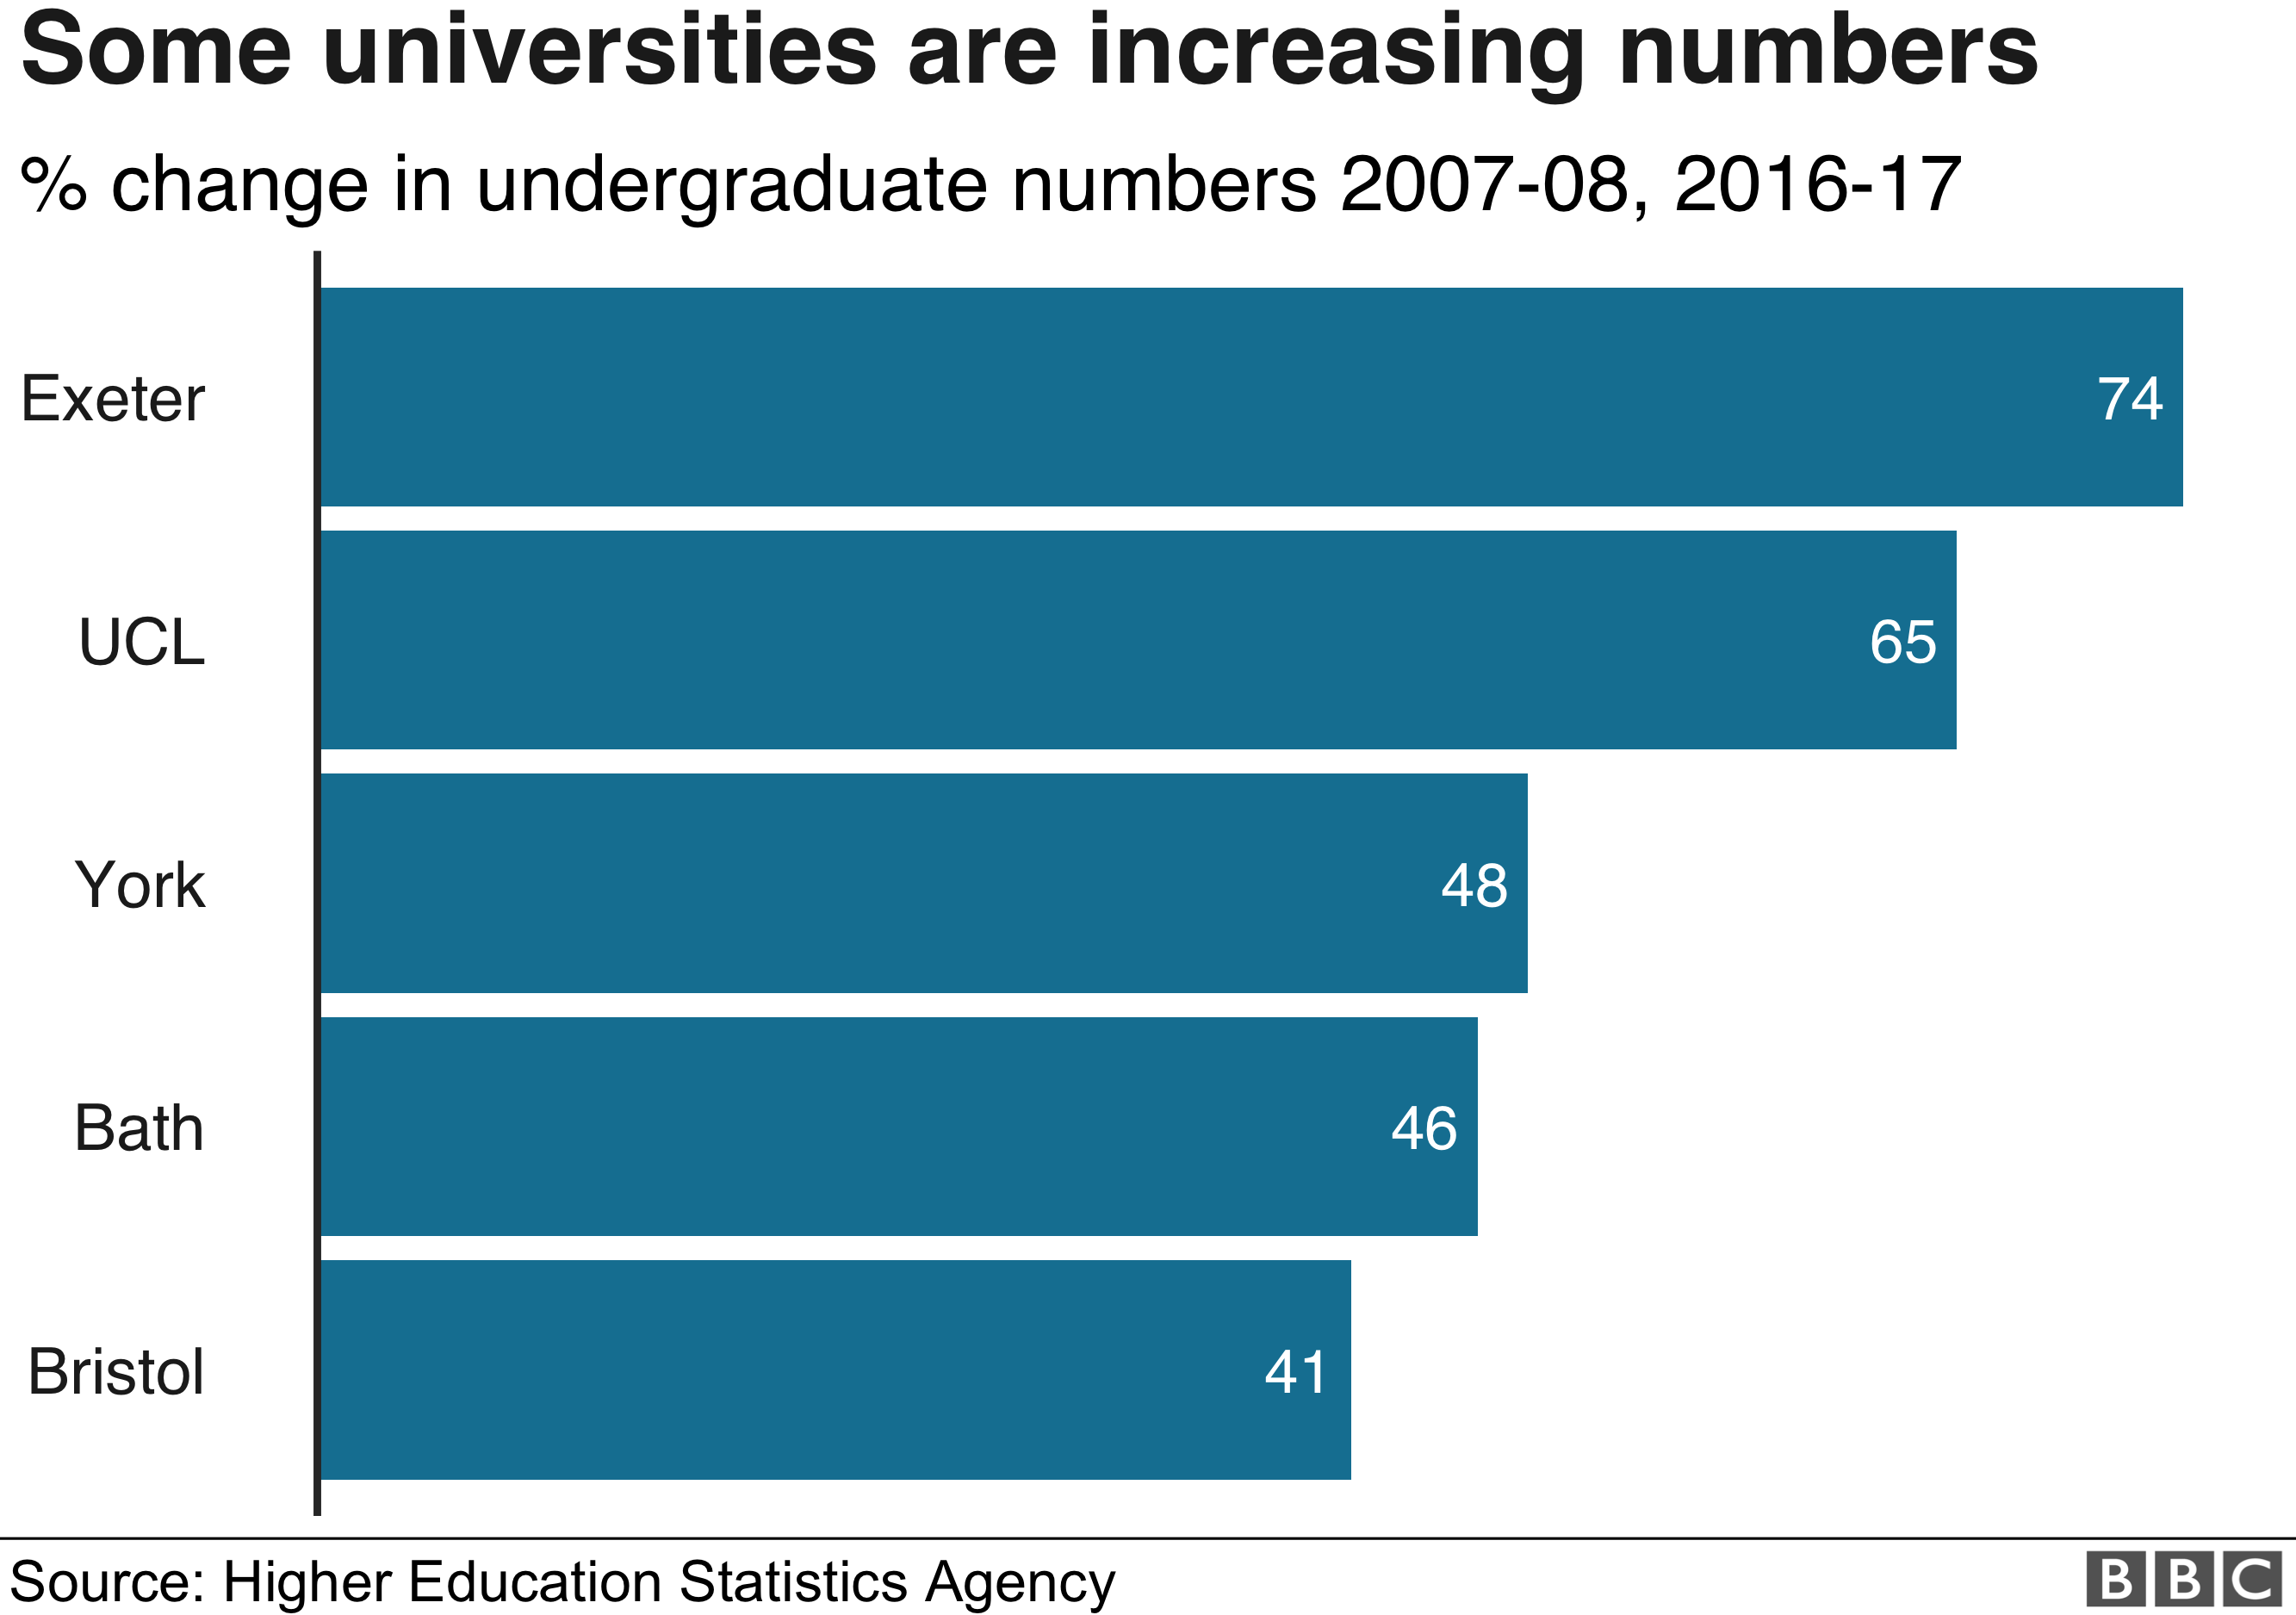 Эксетер, UCL York Bath и Бристоль - пять университетов, в которых наблюдается самый большой прирост студентов в период между 2007-08 и 2016-17 гг.